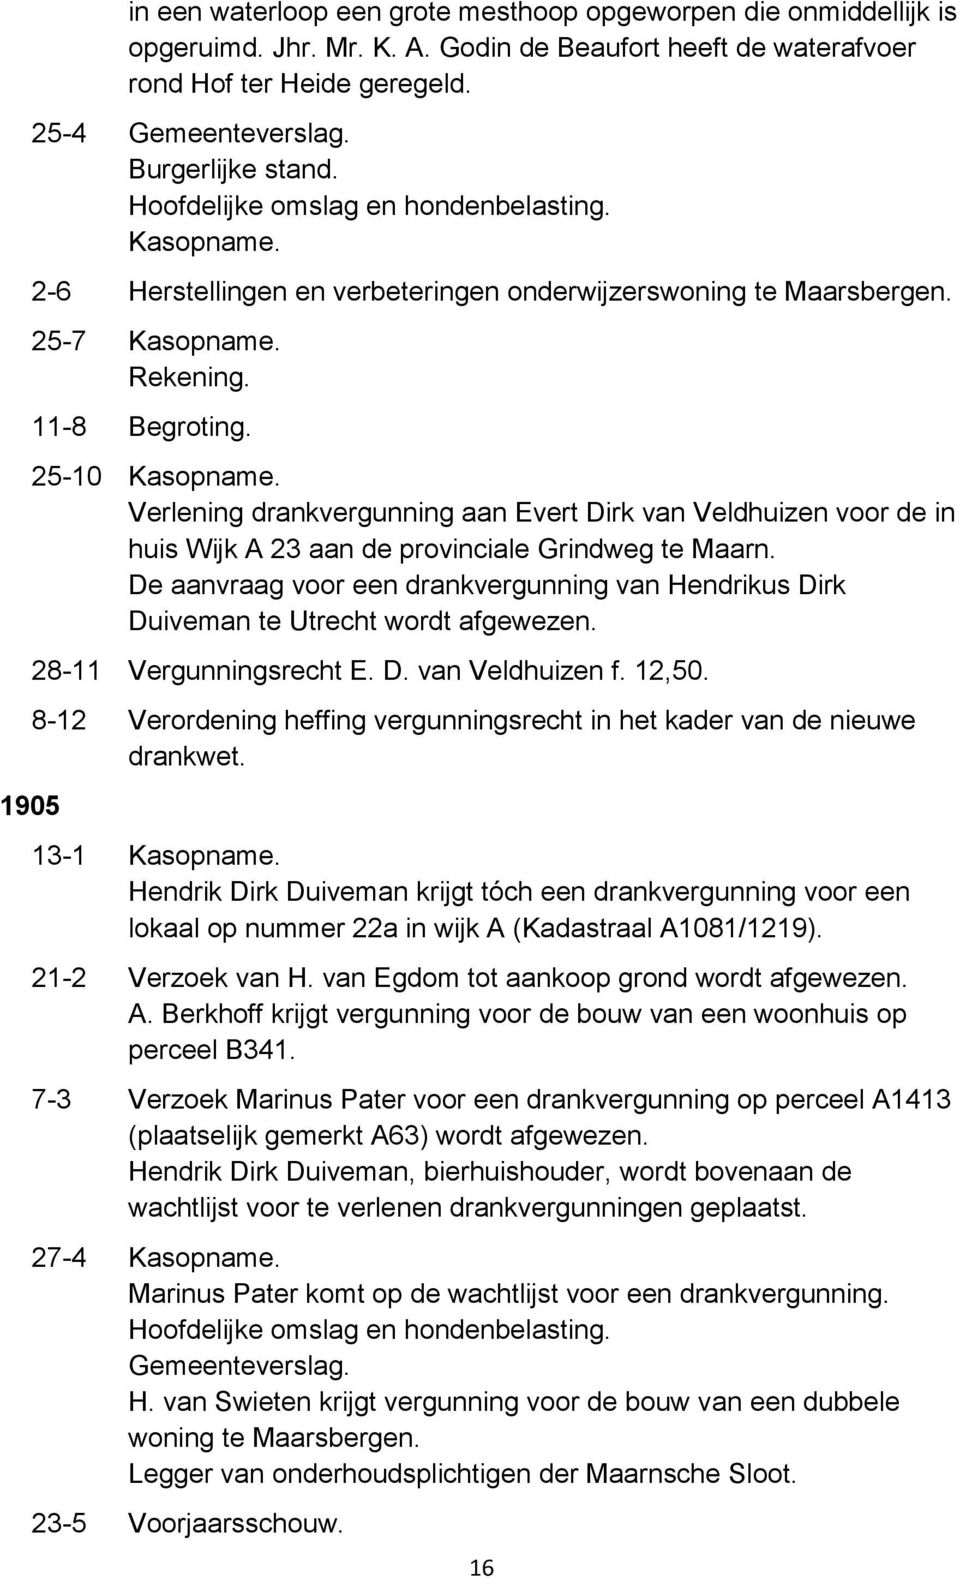 25-10 Verlening drankvergunning aan Evert Dirk van Veldhuizen voor de in huis Wijk A 23 aan de provinciale Grindweg te Maarn.